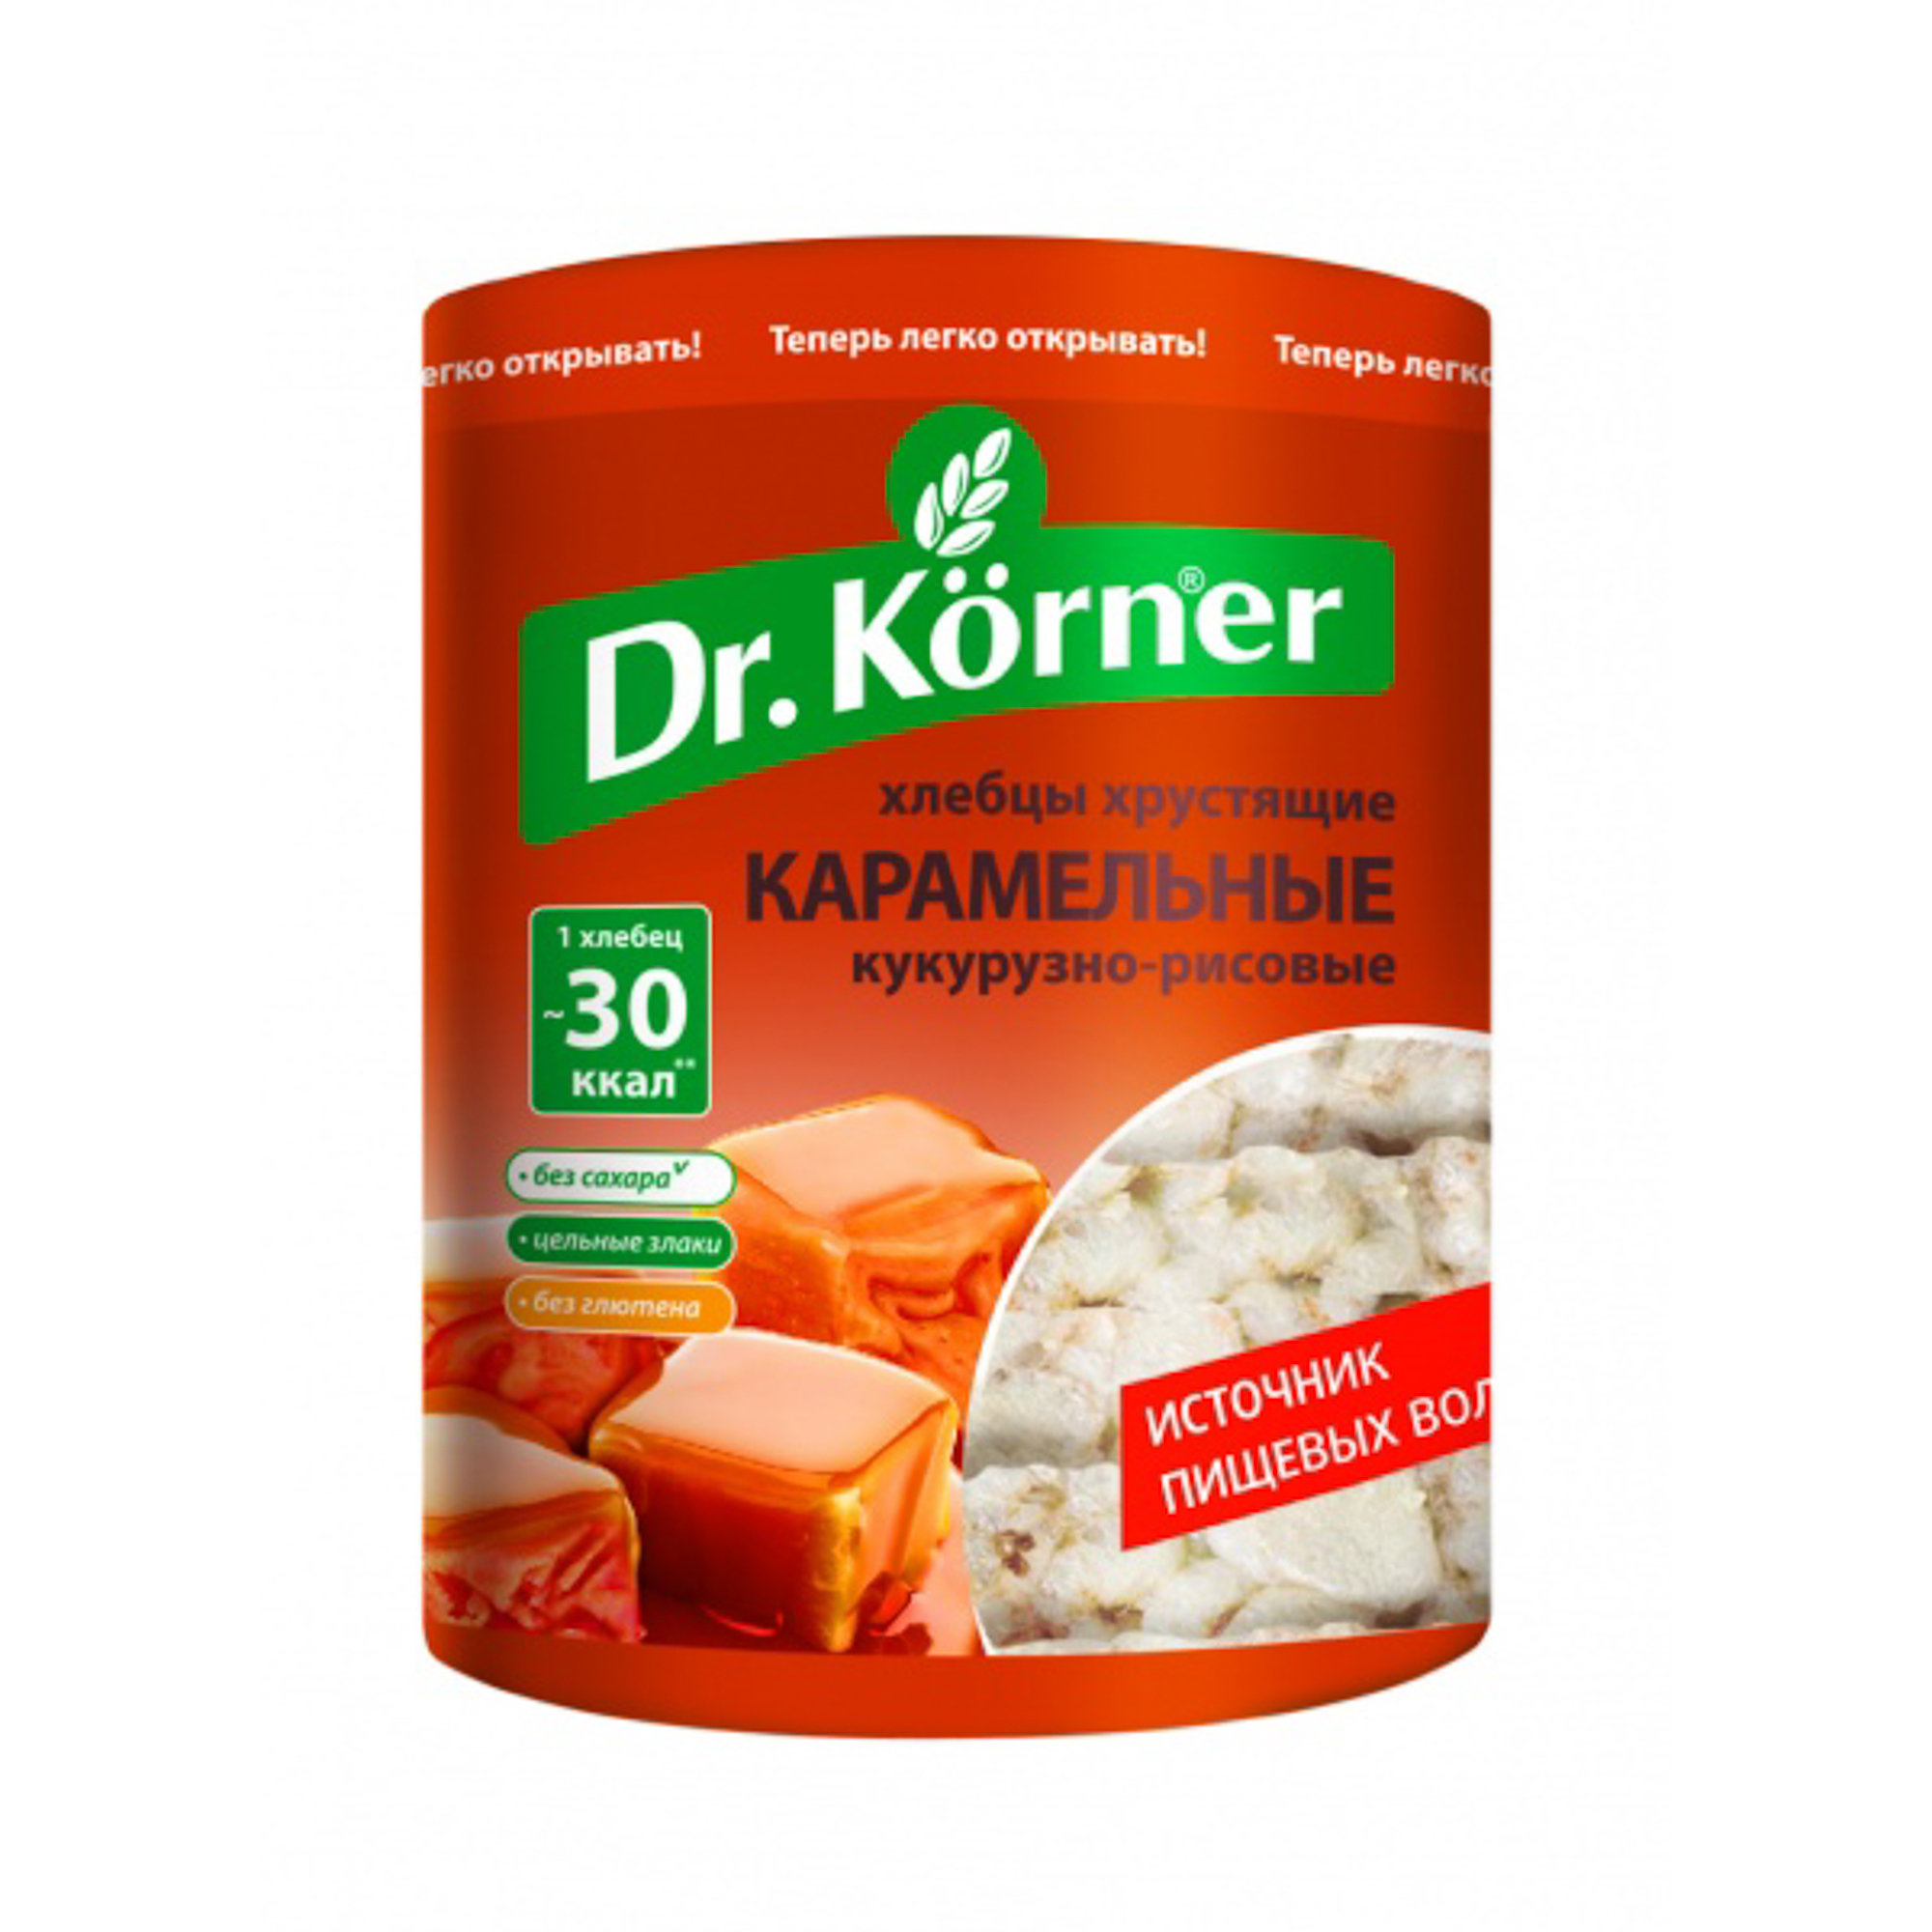 Хлебцы Dr.Korner хрустящие кукурузно-рисовые карамельные 90 г хлебцы хрустящие doctor grain ростовские рисовые 80 г